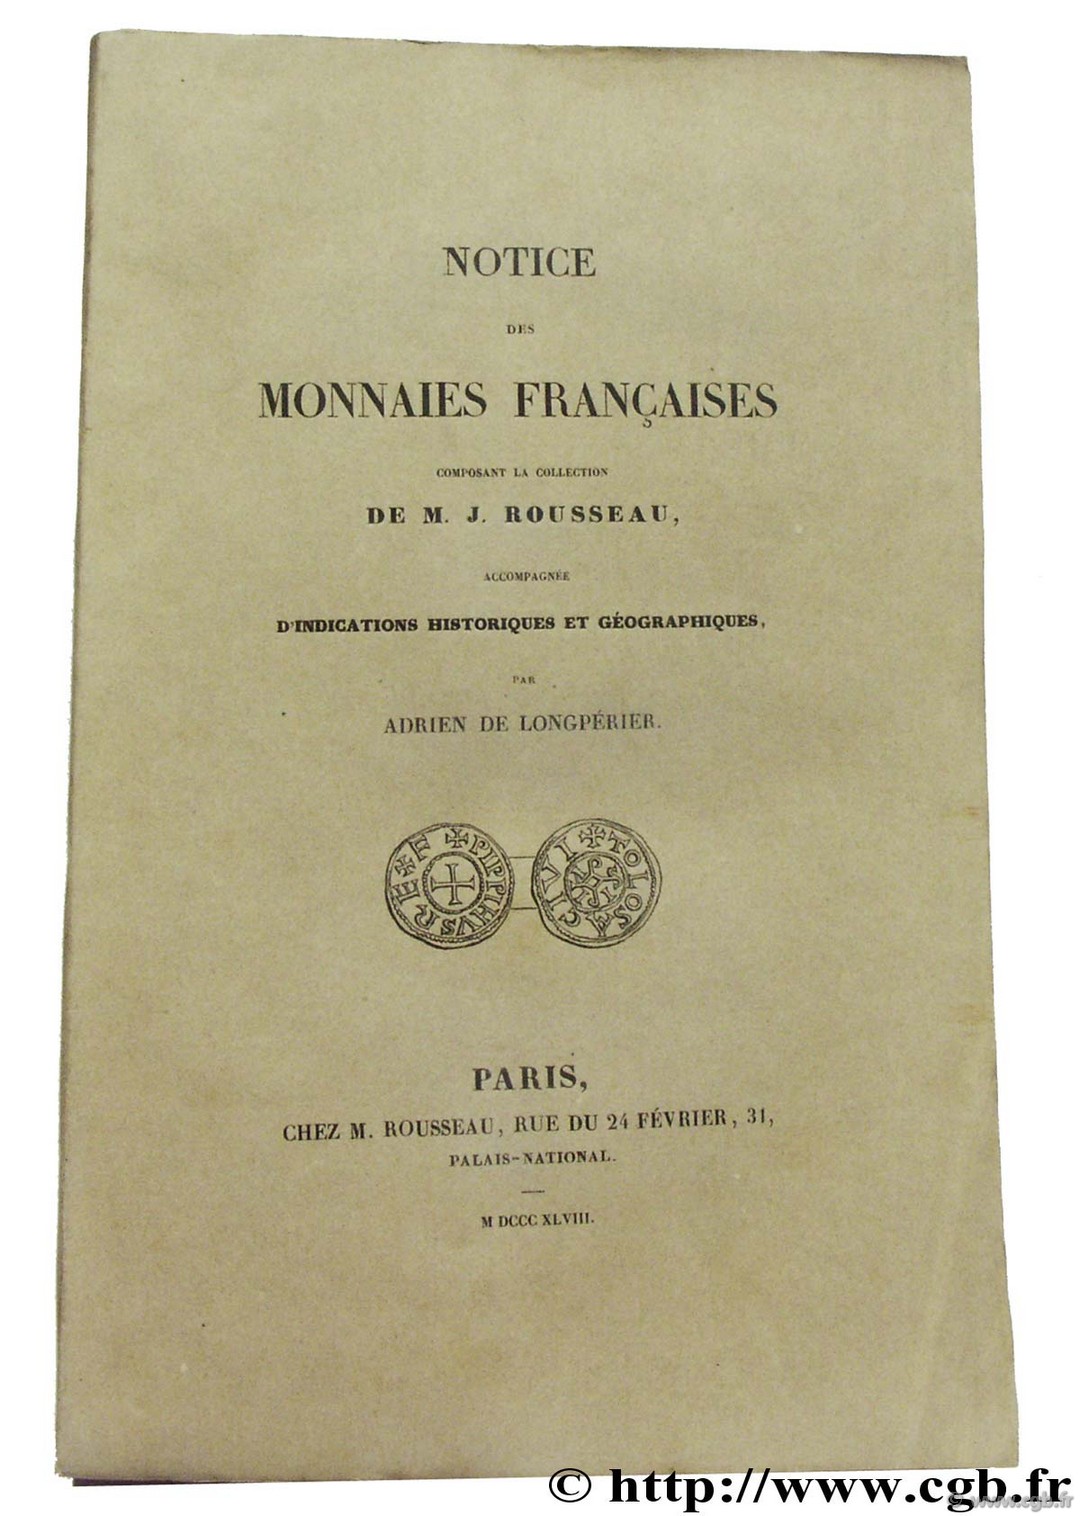 Notice des monnaies françaises composant la collection de M. J. Rousseau accompagnée d indications historiques et géographiques LONGPÉRIER A. de